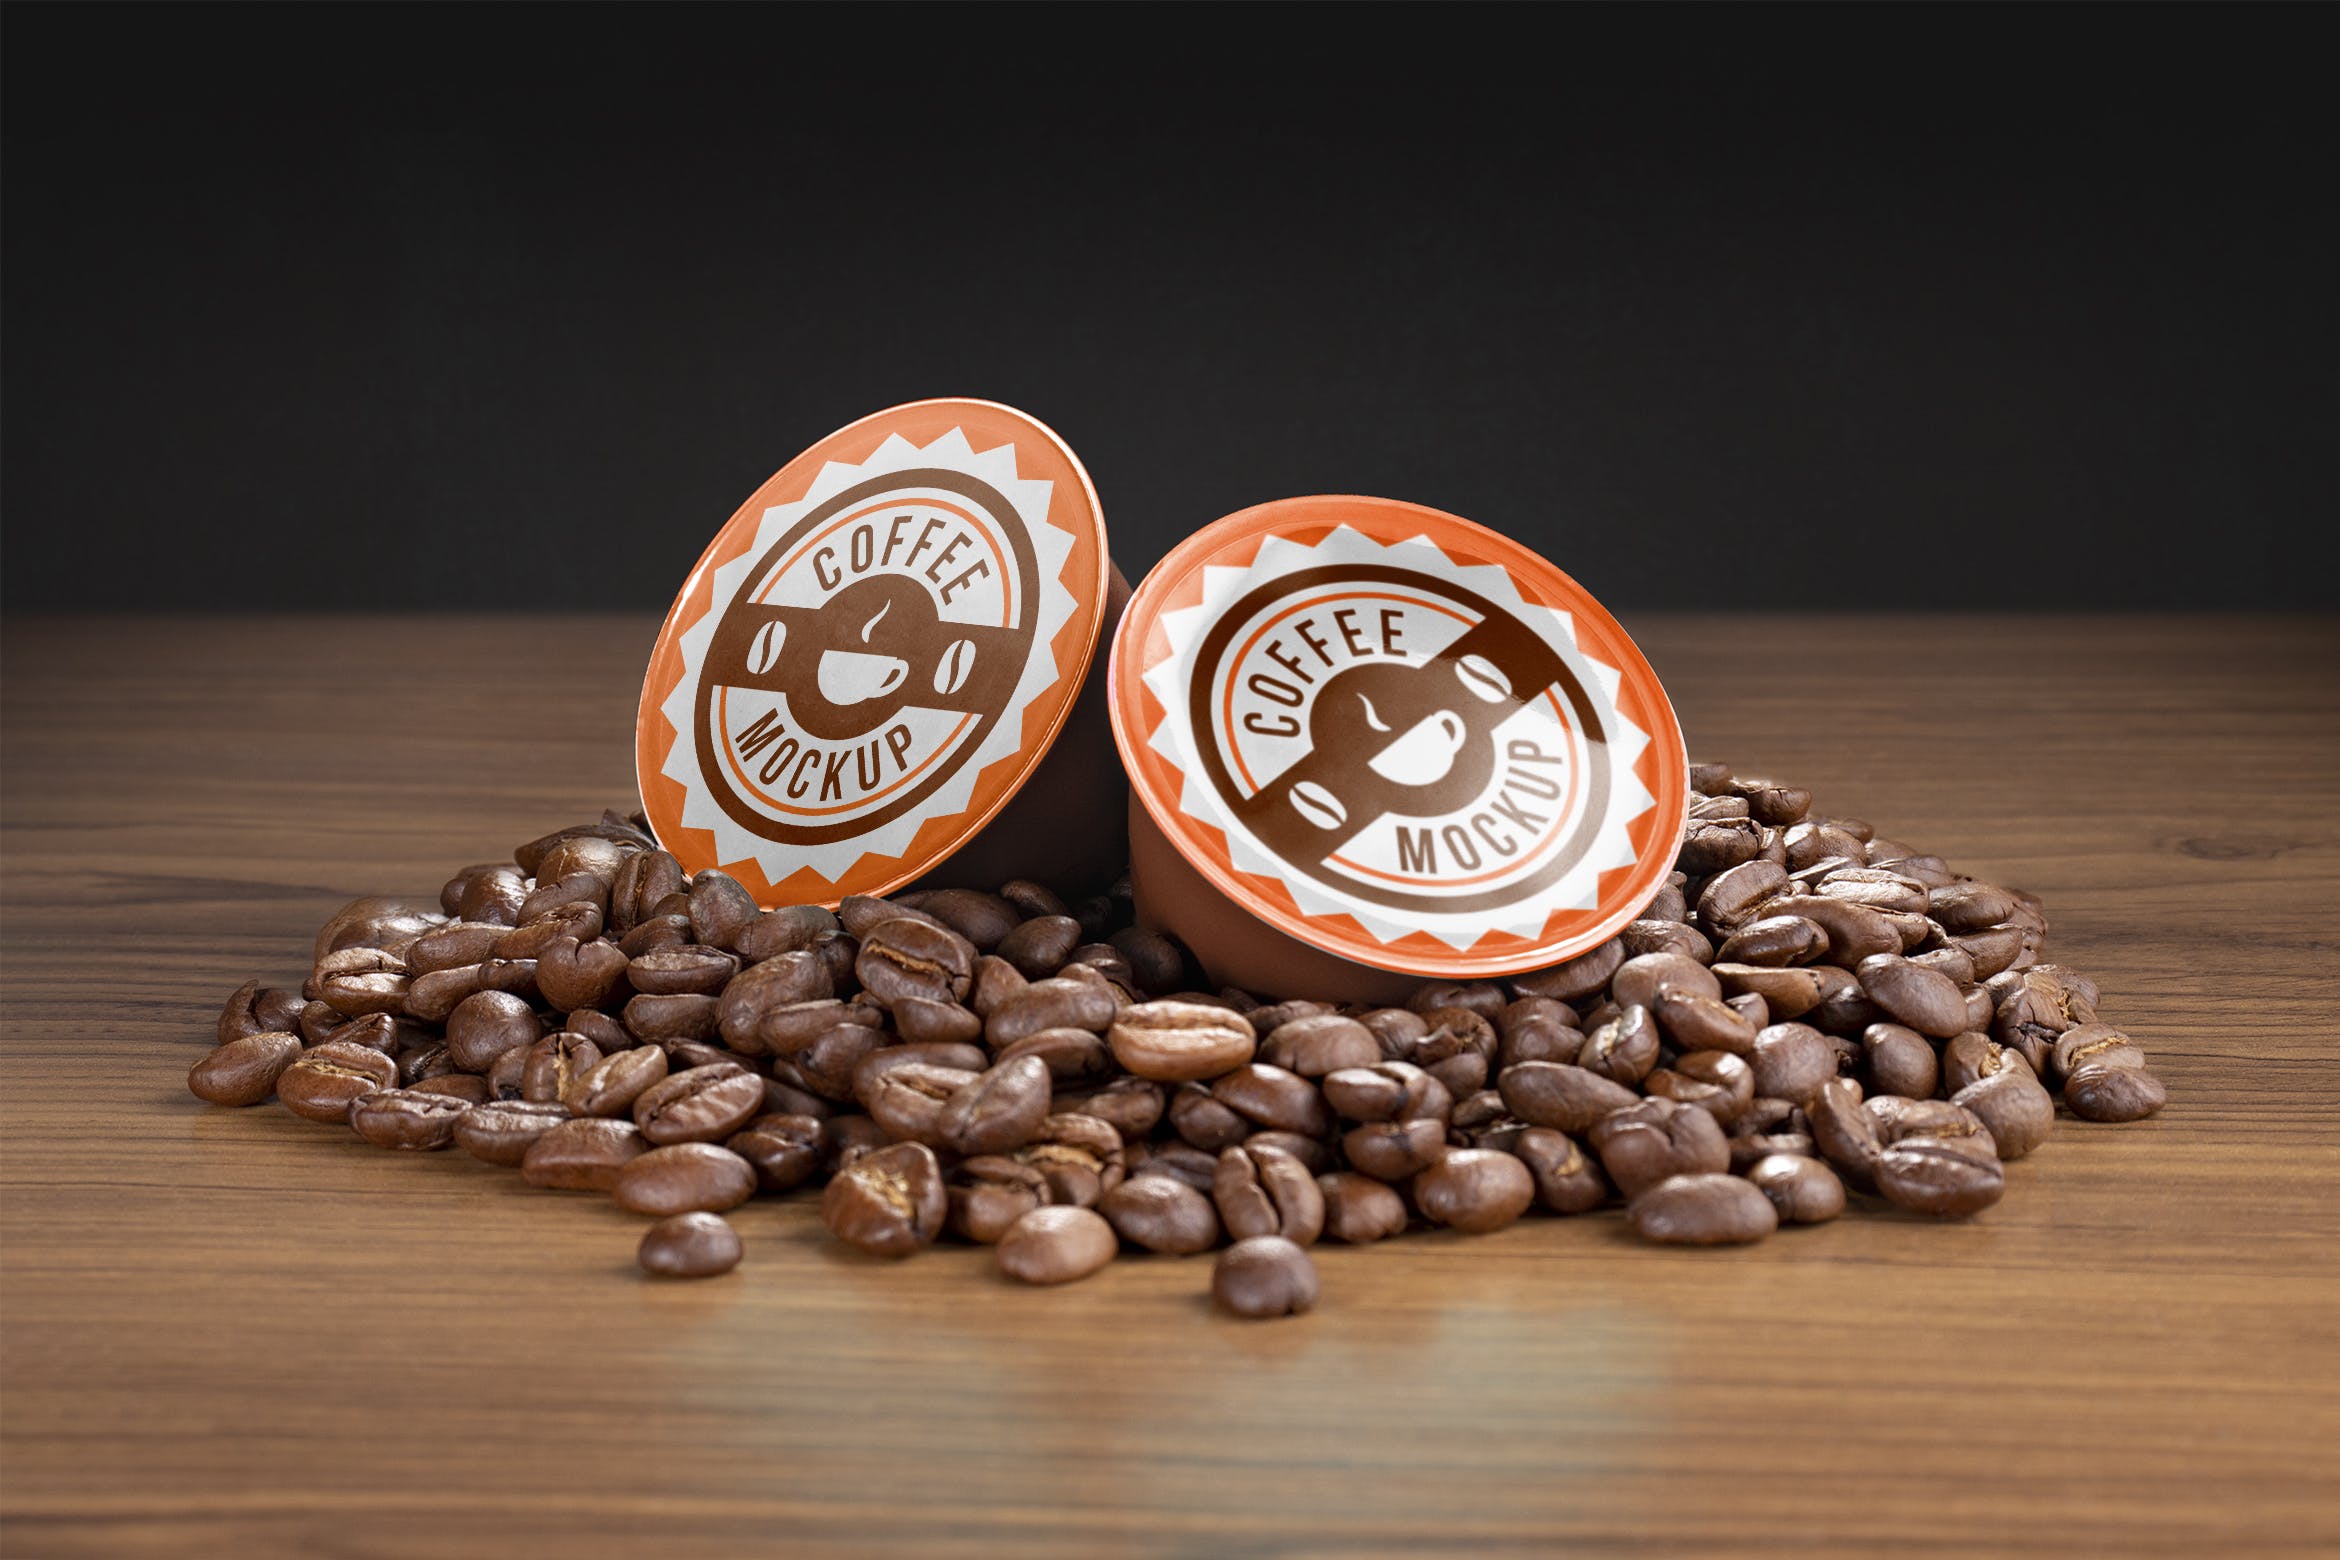 咖啡胶囊外包装设计非凡图库精选模板 Coffee capsule mockup插图